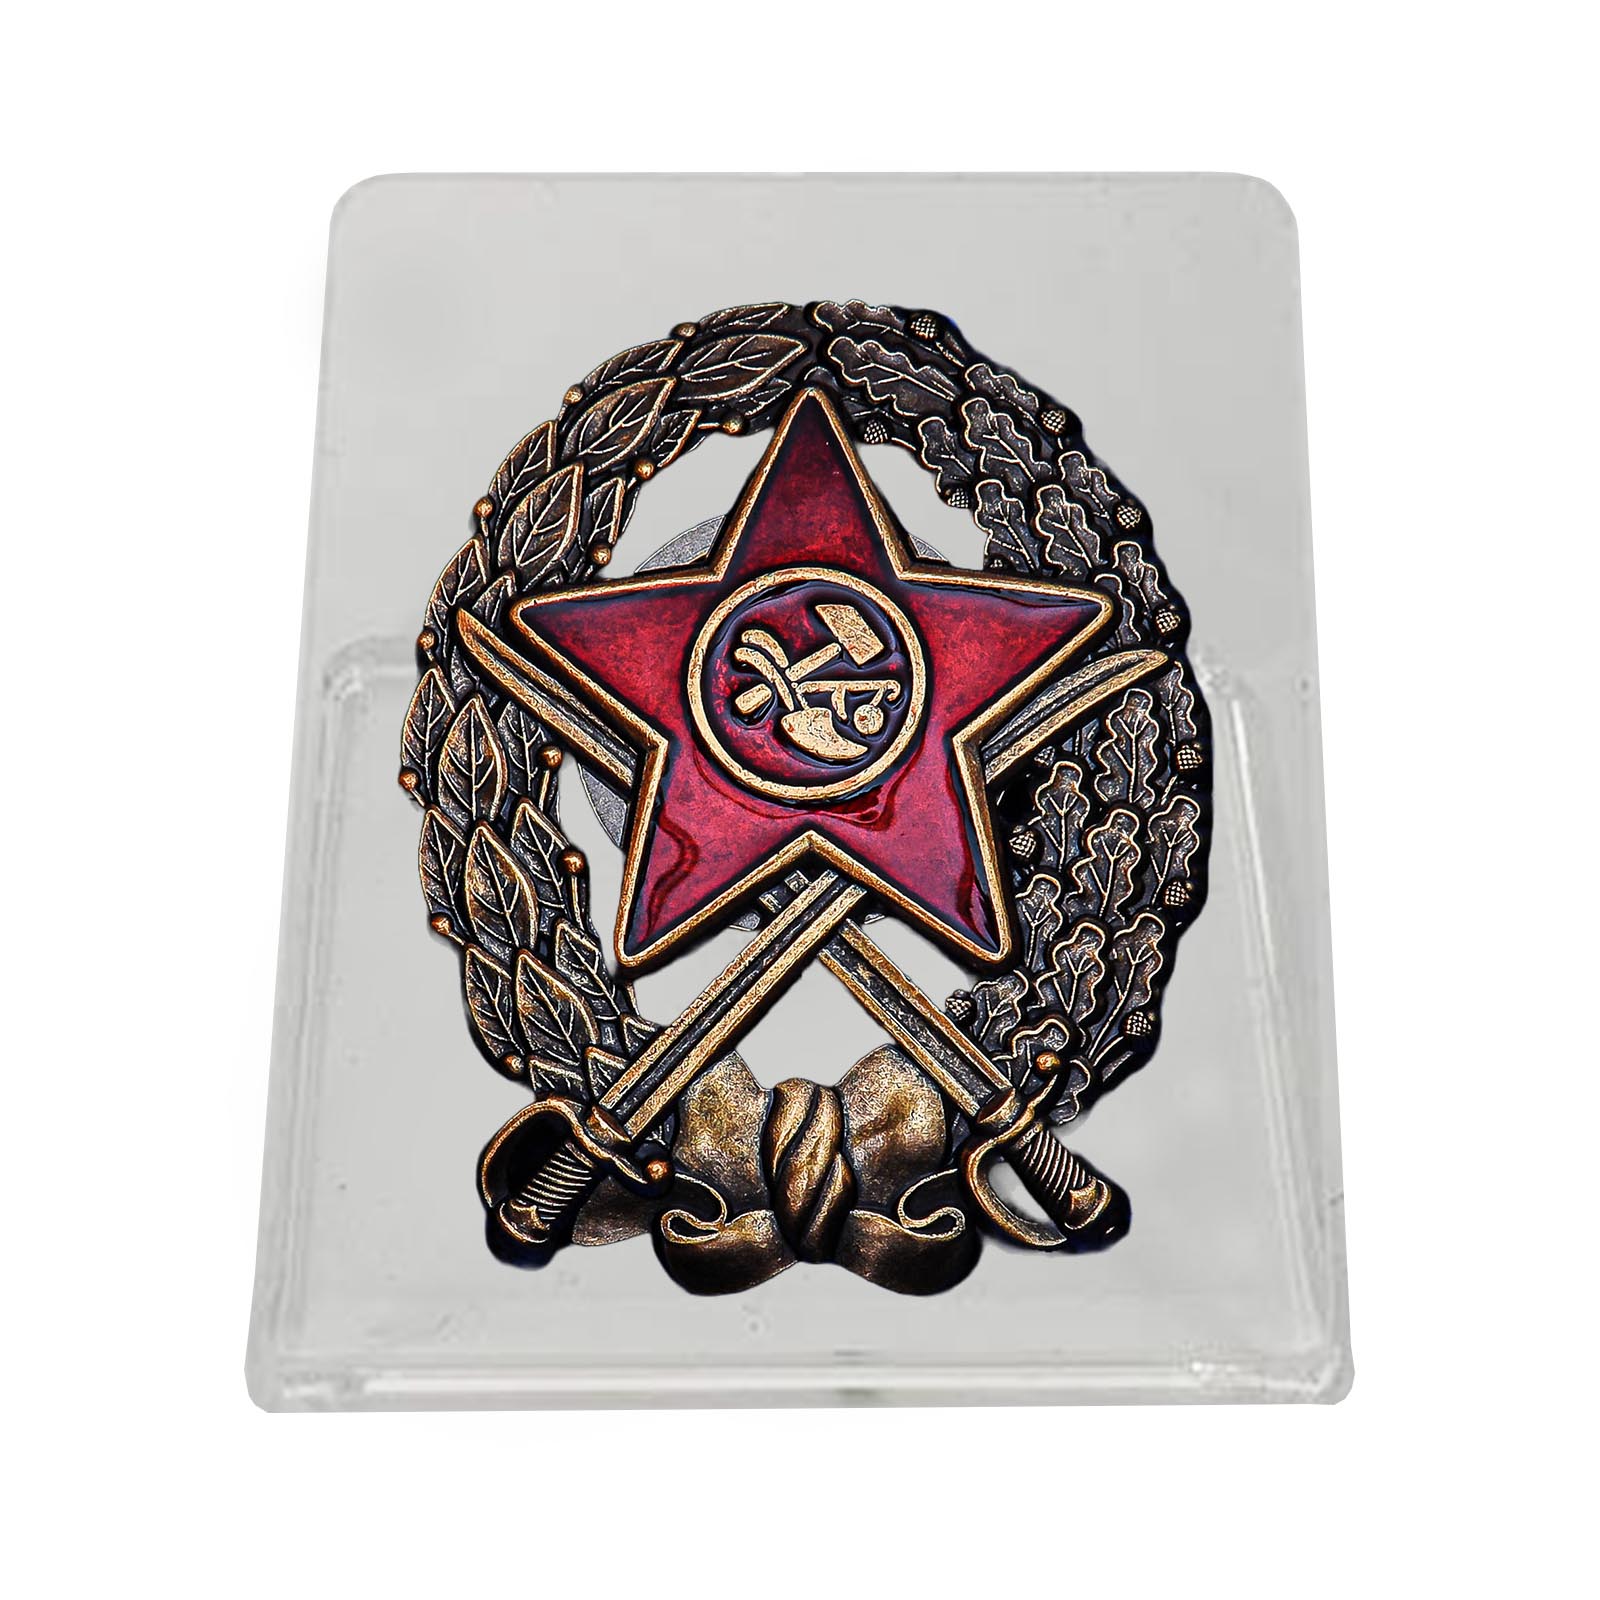 Купить знак Красного Командира кавалерийских частей РККА на подставке онлайн